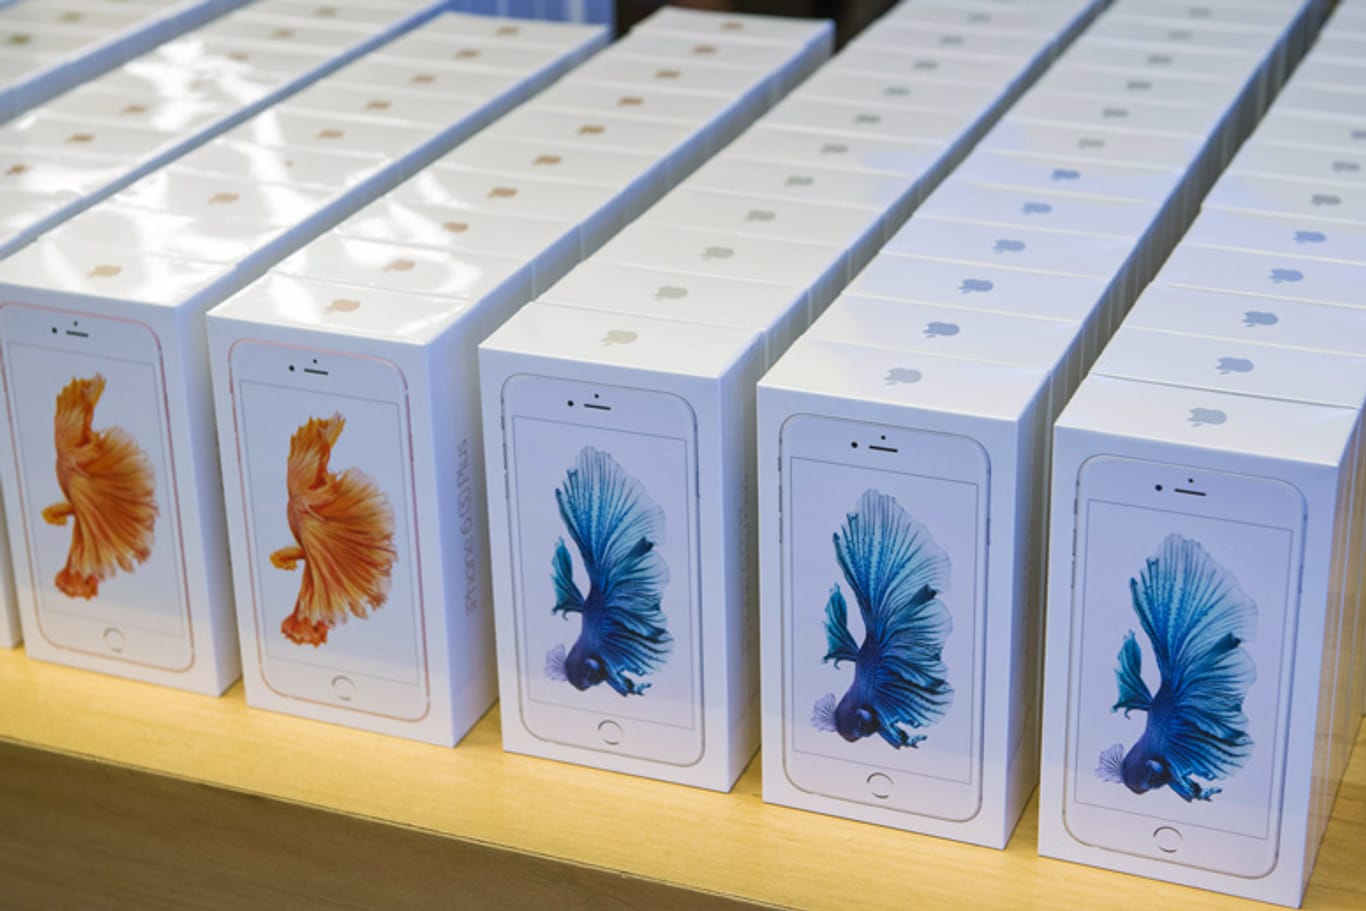 Viele Käufer des neuen iPhone 6s berichten von einem merkwürdigen Fehler.